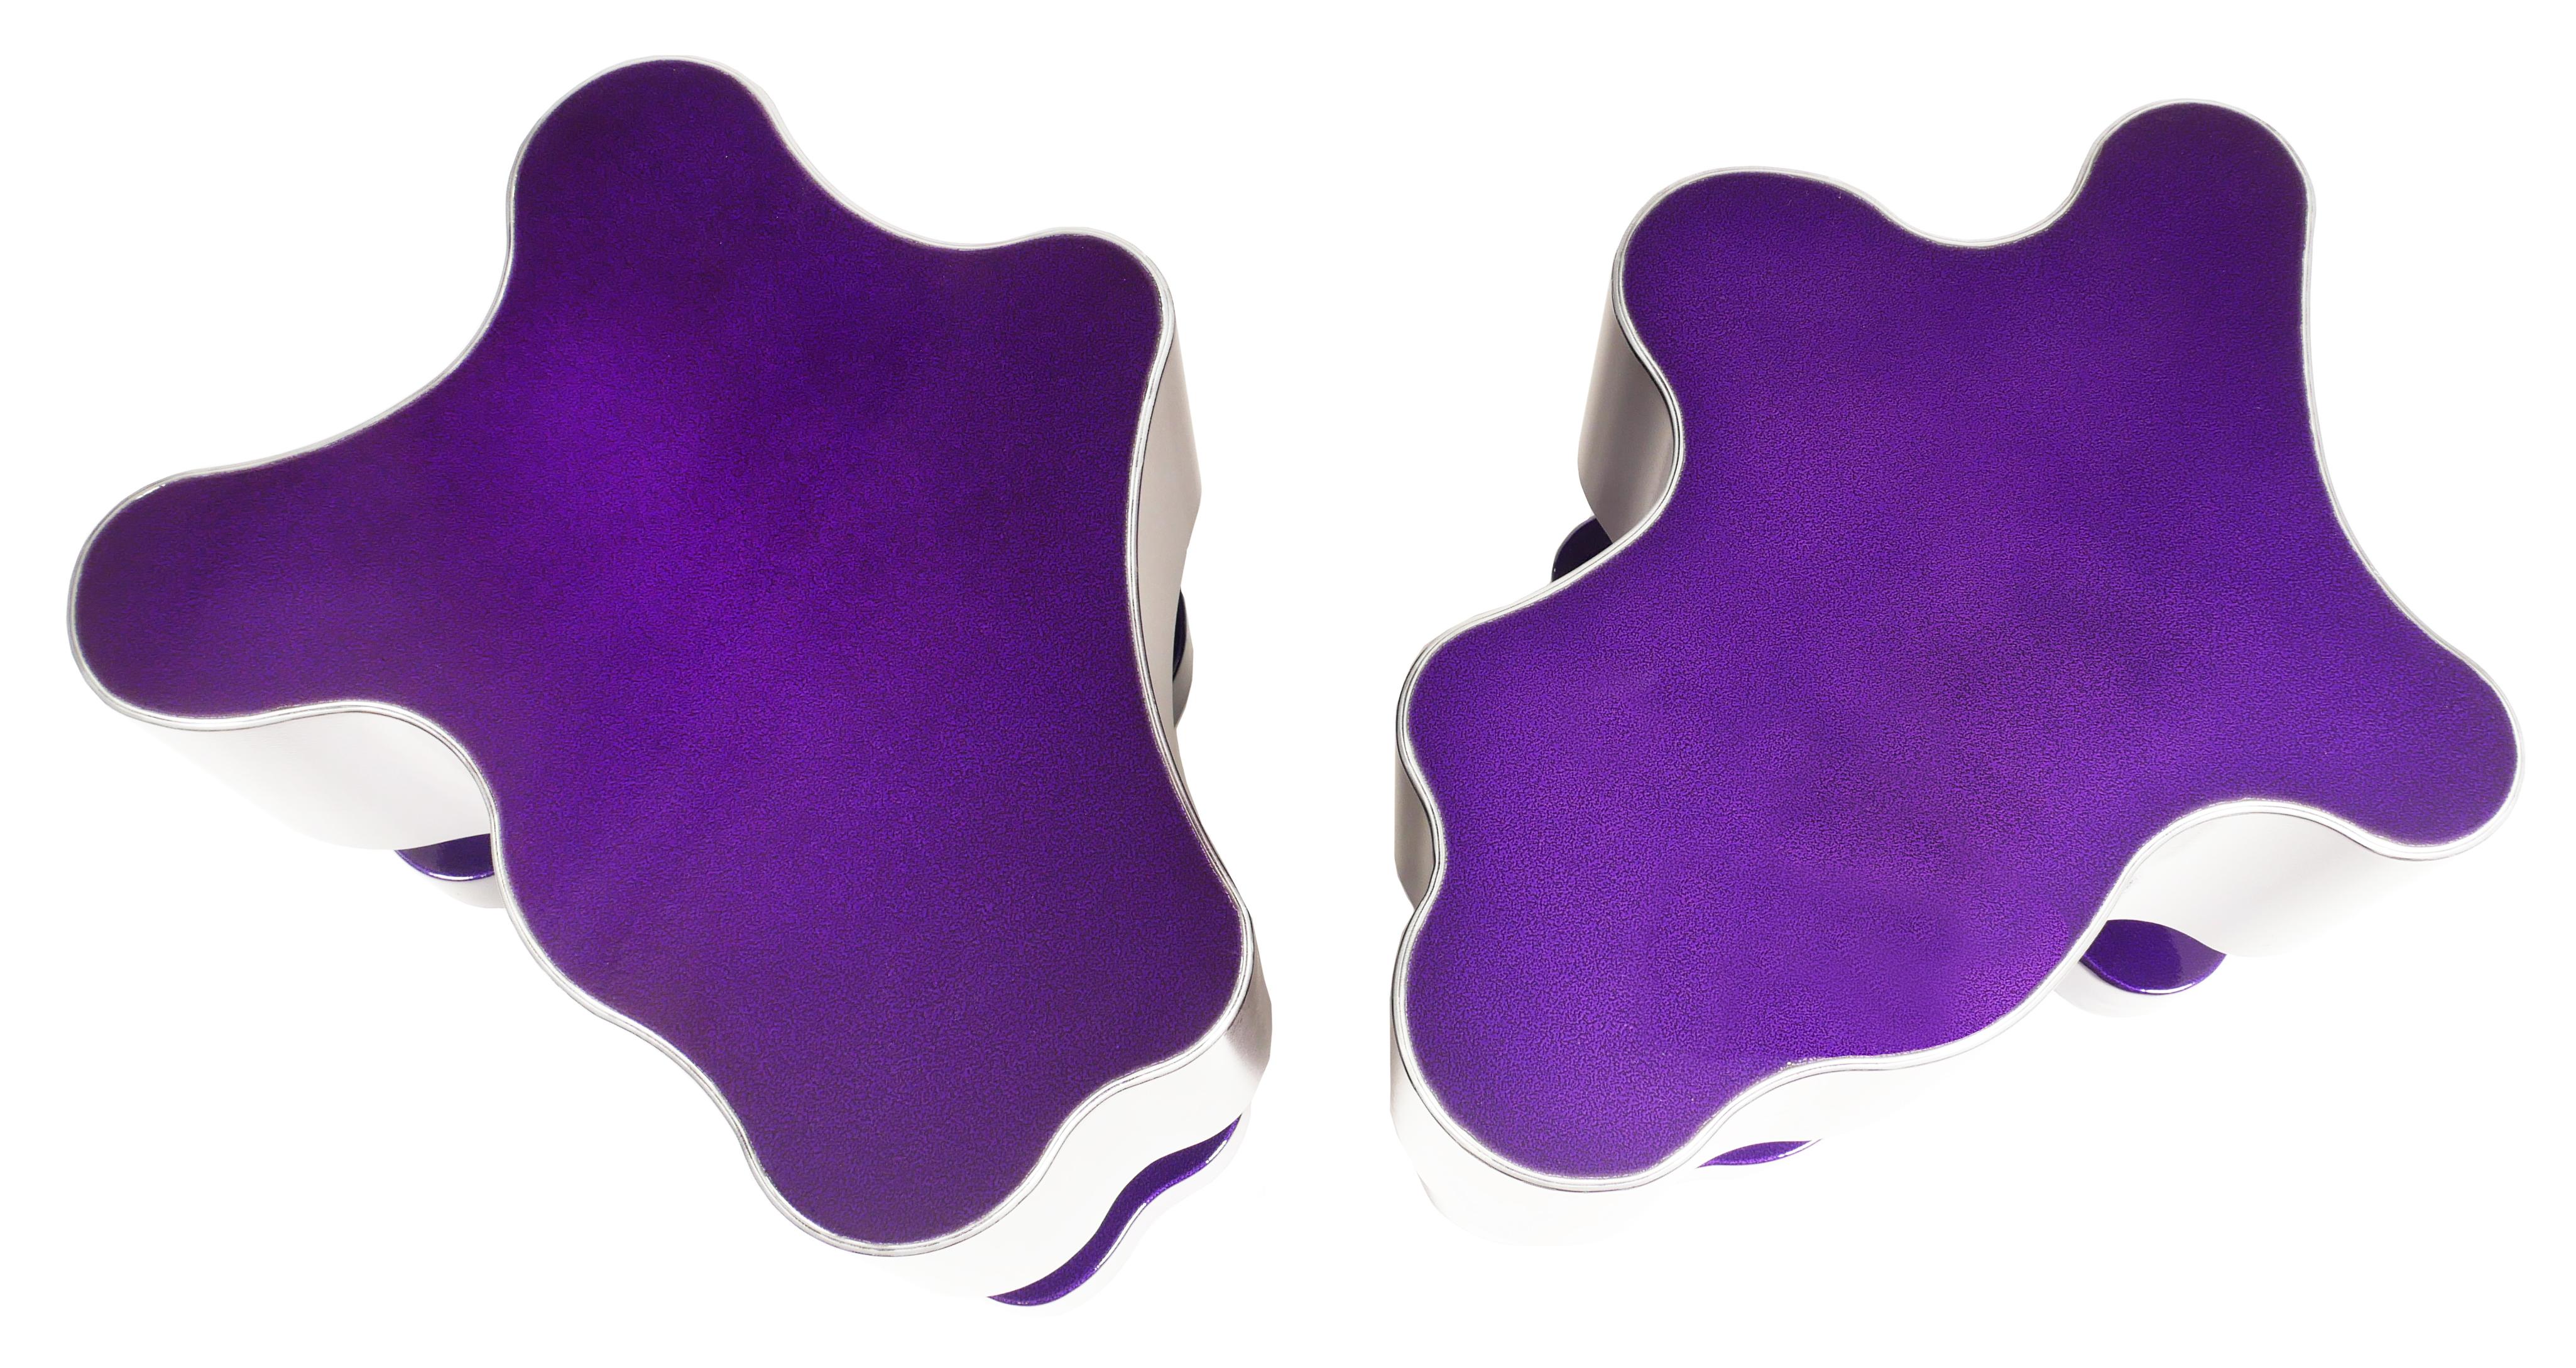 Bert Furnari studio free-form abstract side tables in powder-coated aluminum

Nous proposons à la vente une paire de tables d'appoint uniques en aluminium avec une finition en poudre violette. Cette paire de tables uniques est fabriquée dans le